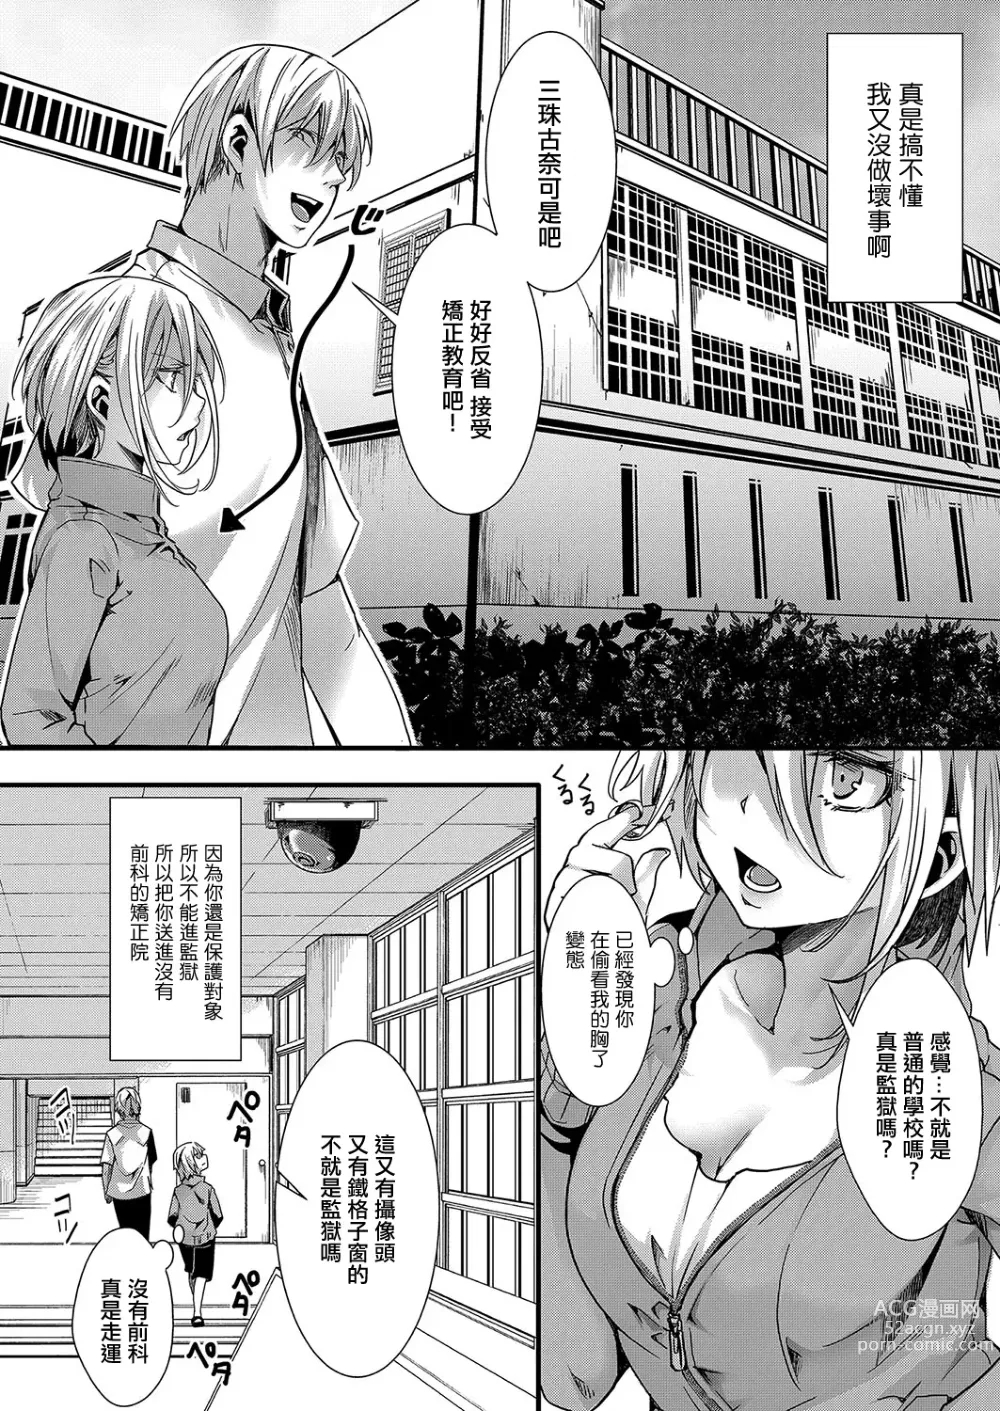 Page 2 of manga Mesuana no Kouseiin 1-jigenme